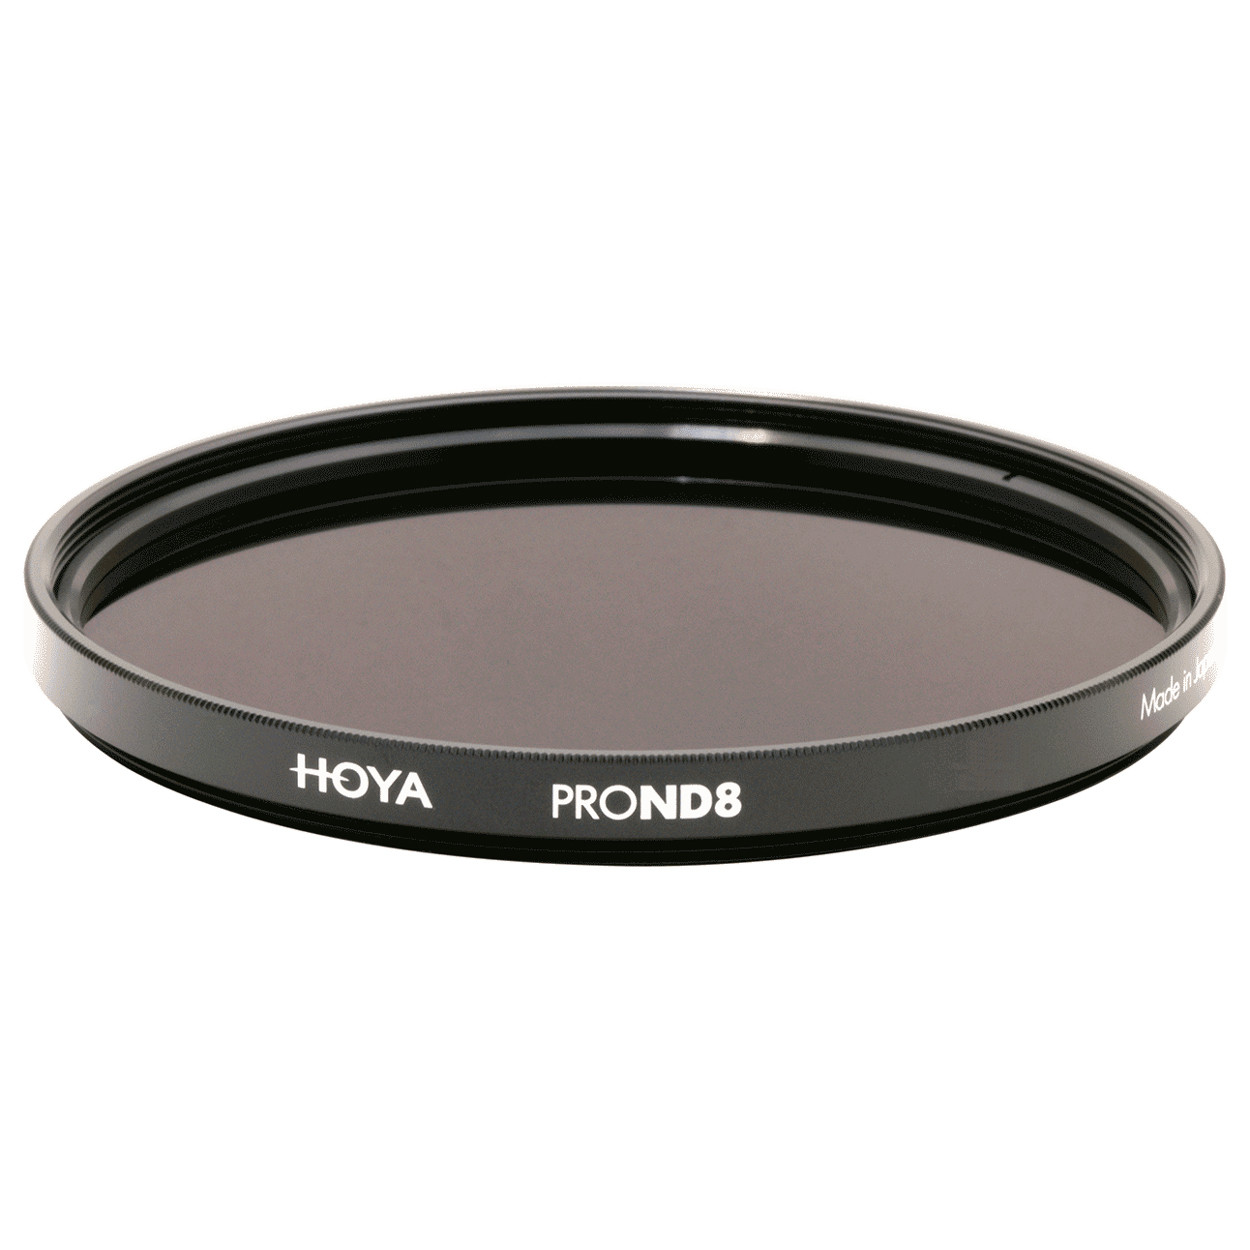 Фильтр нейтрально-серый Hoya Pro ND 8 (3 стопа) 82 мм